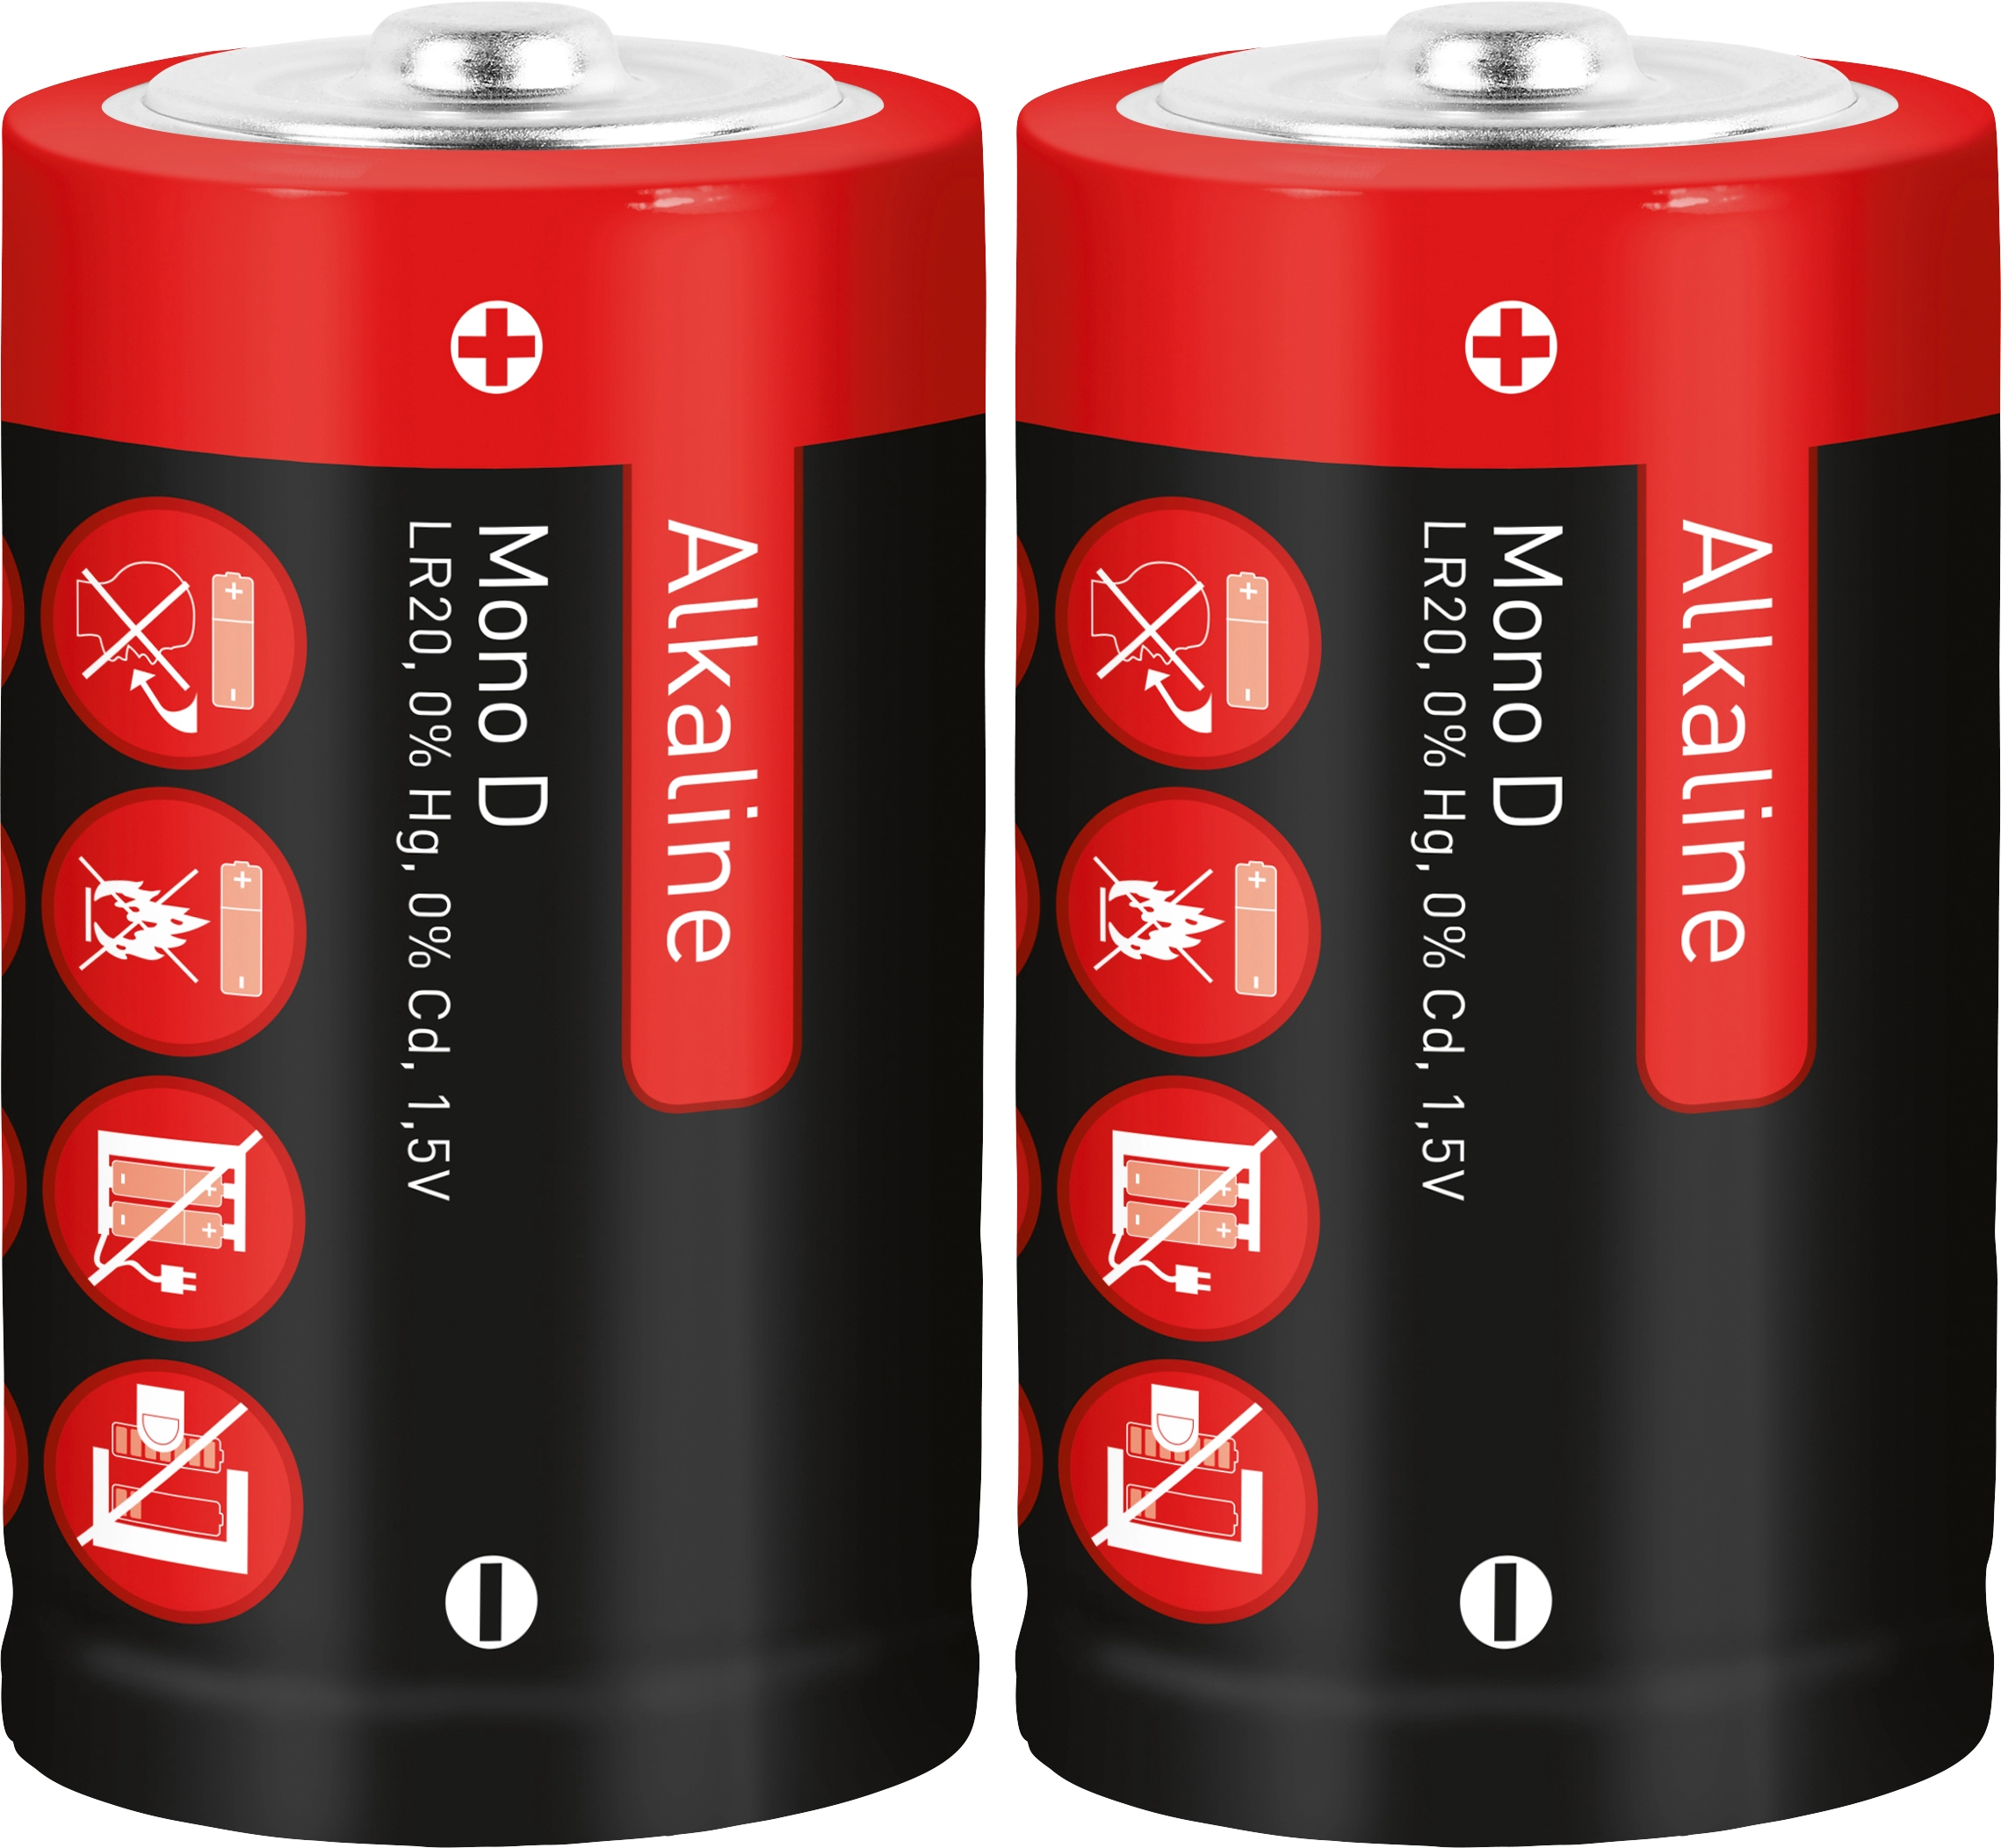 Alkaline Batterie Mono D kaufen bei OBI